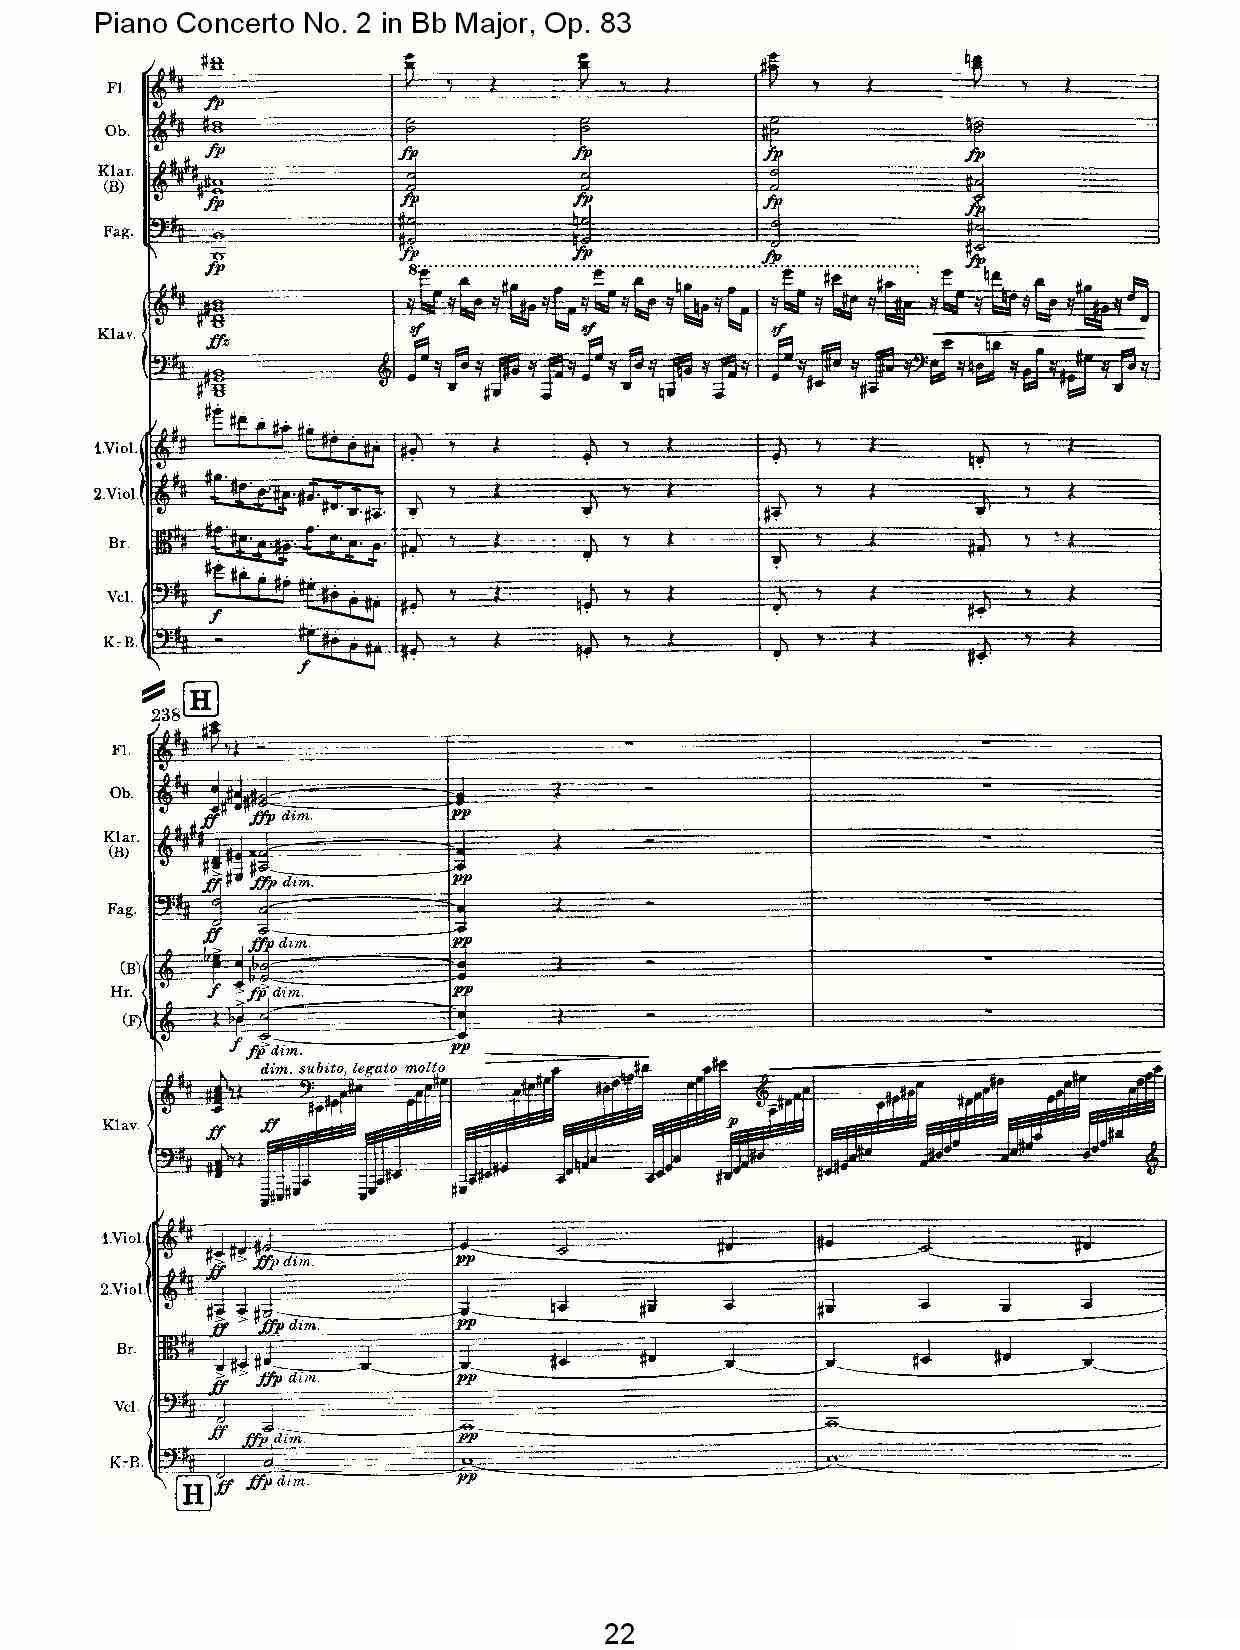 Bb大调钢琴第二协奏曲, Op.83第一乐章（一）钢琴曲谱（图23）